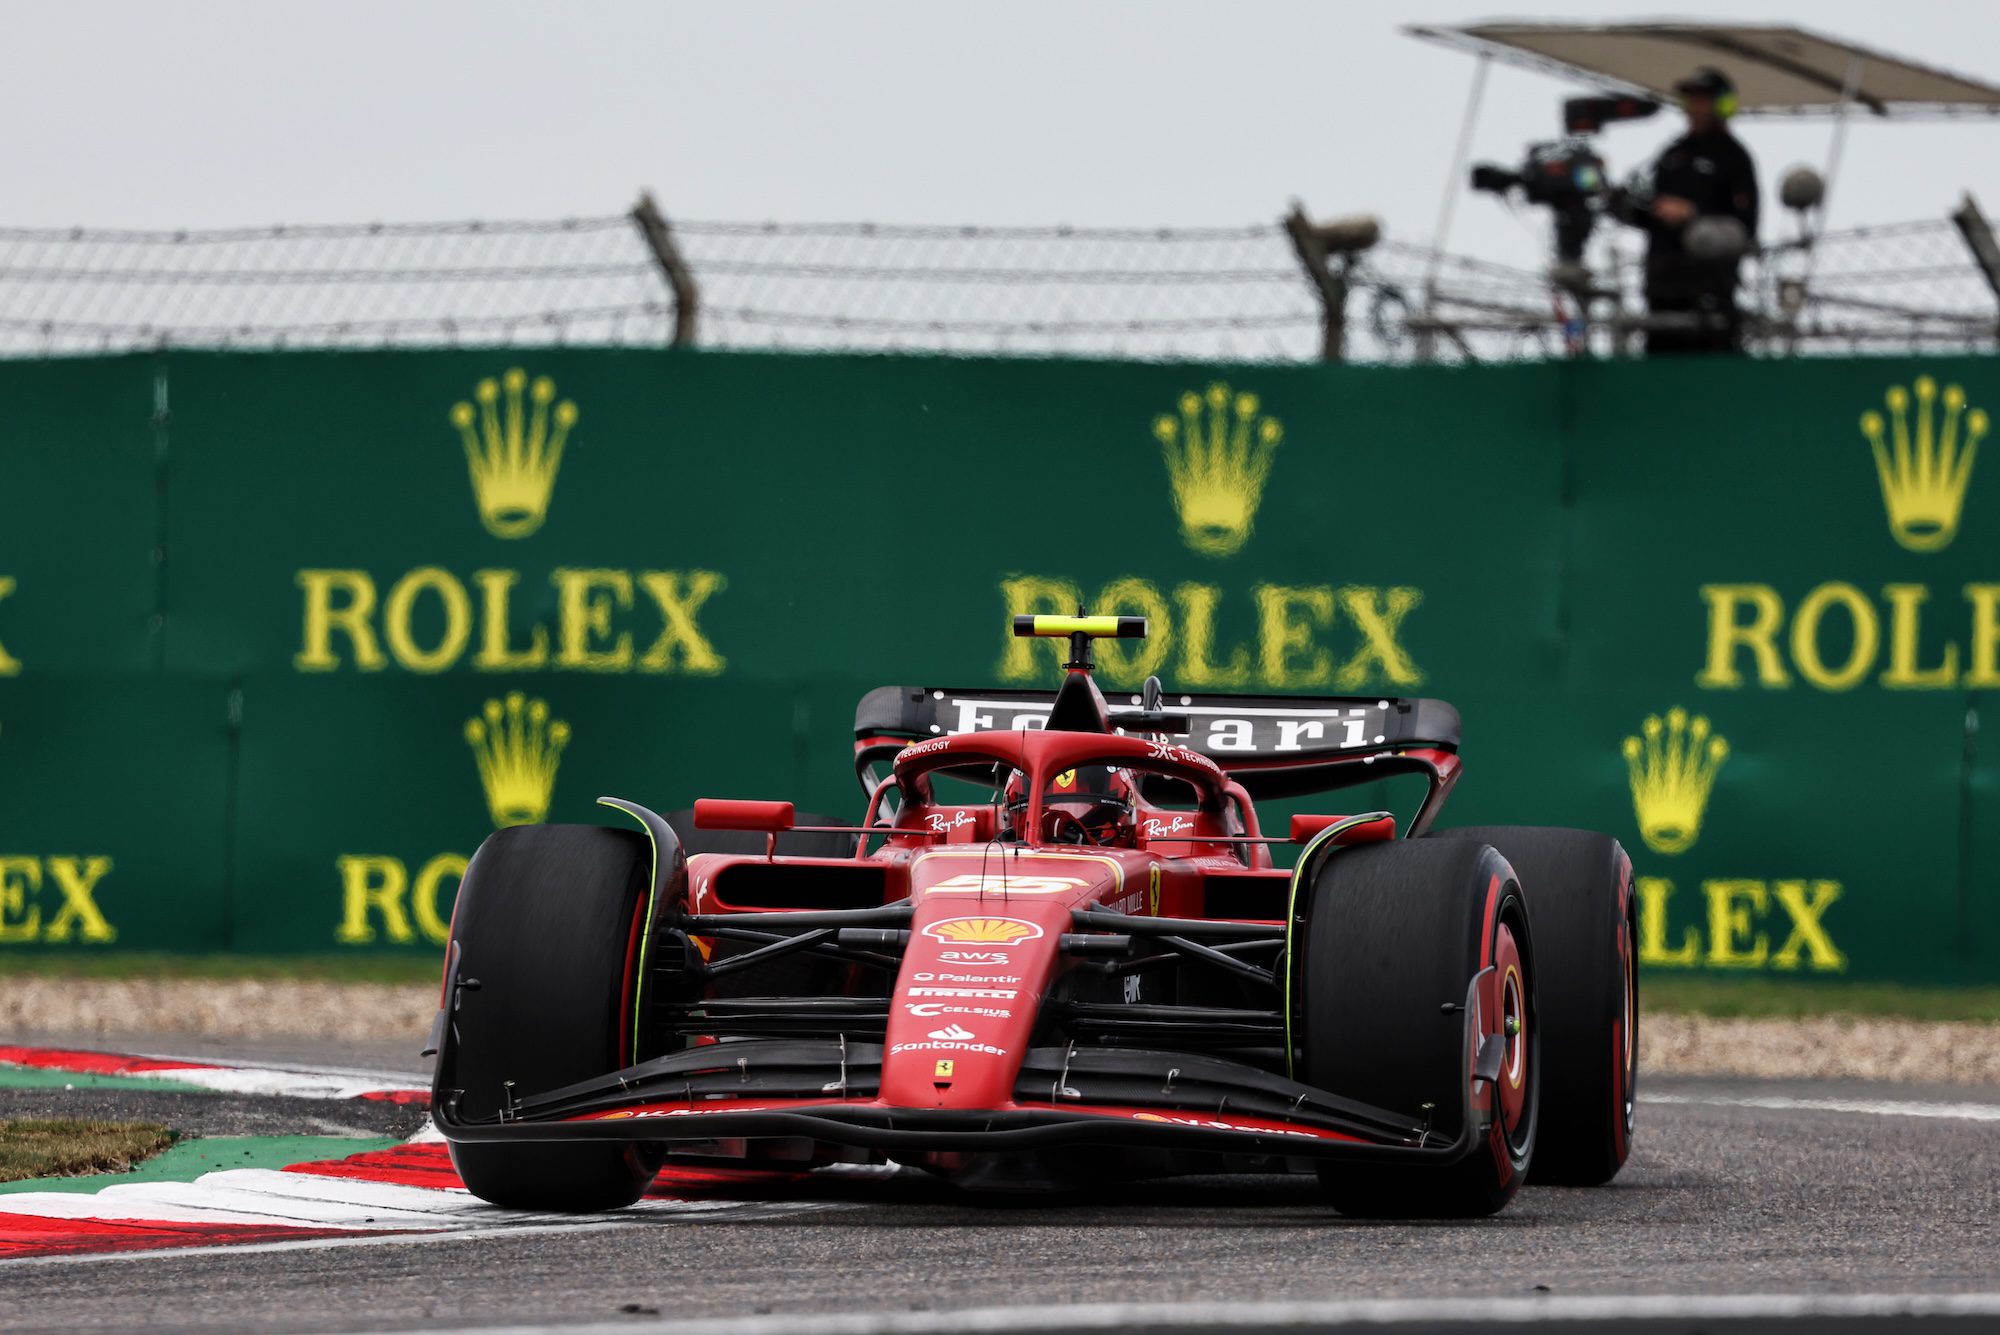 F1: Carlos Sainz provoca bandeira vermelha no qualificatório do GP da China